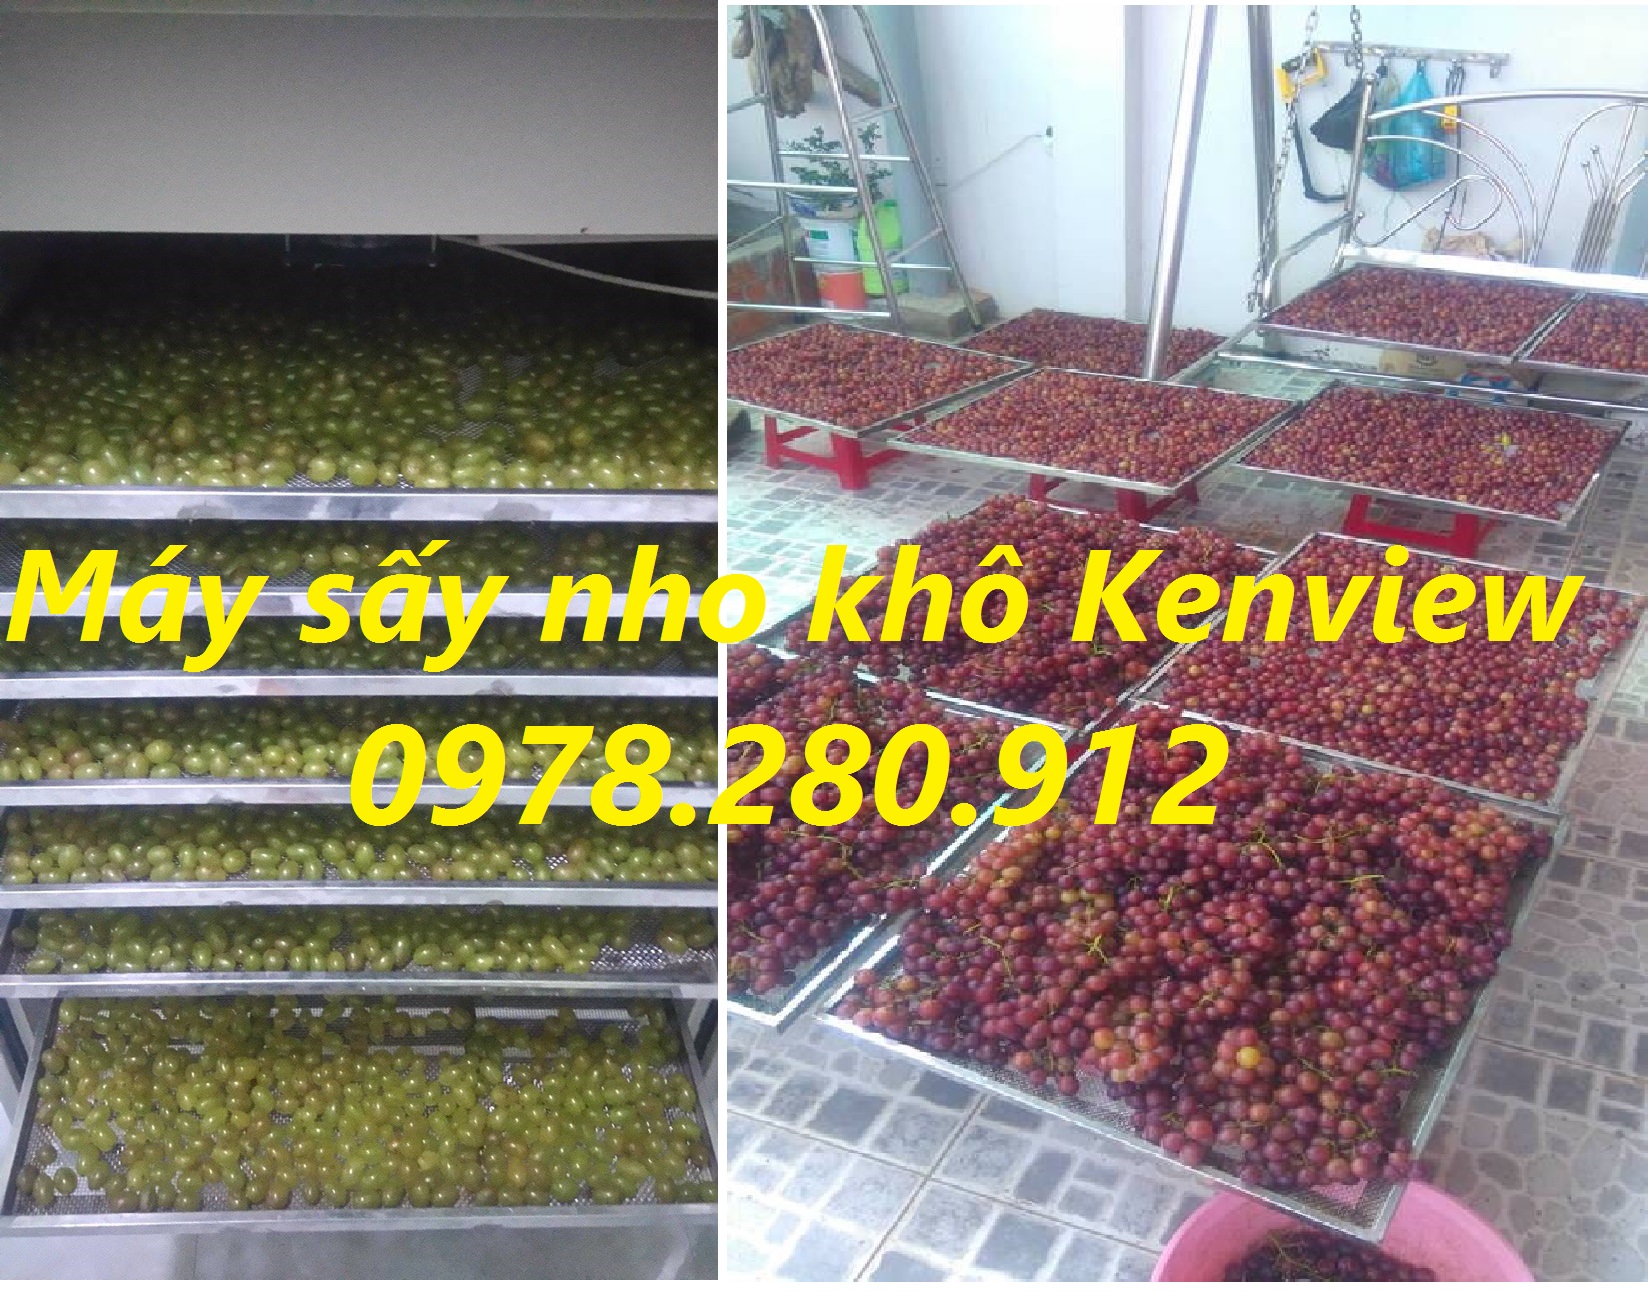 Cung cấp máy sấy trái cây : sấy nho, sấy táo tại Ninh Thuận.0978280912.